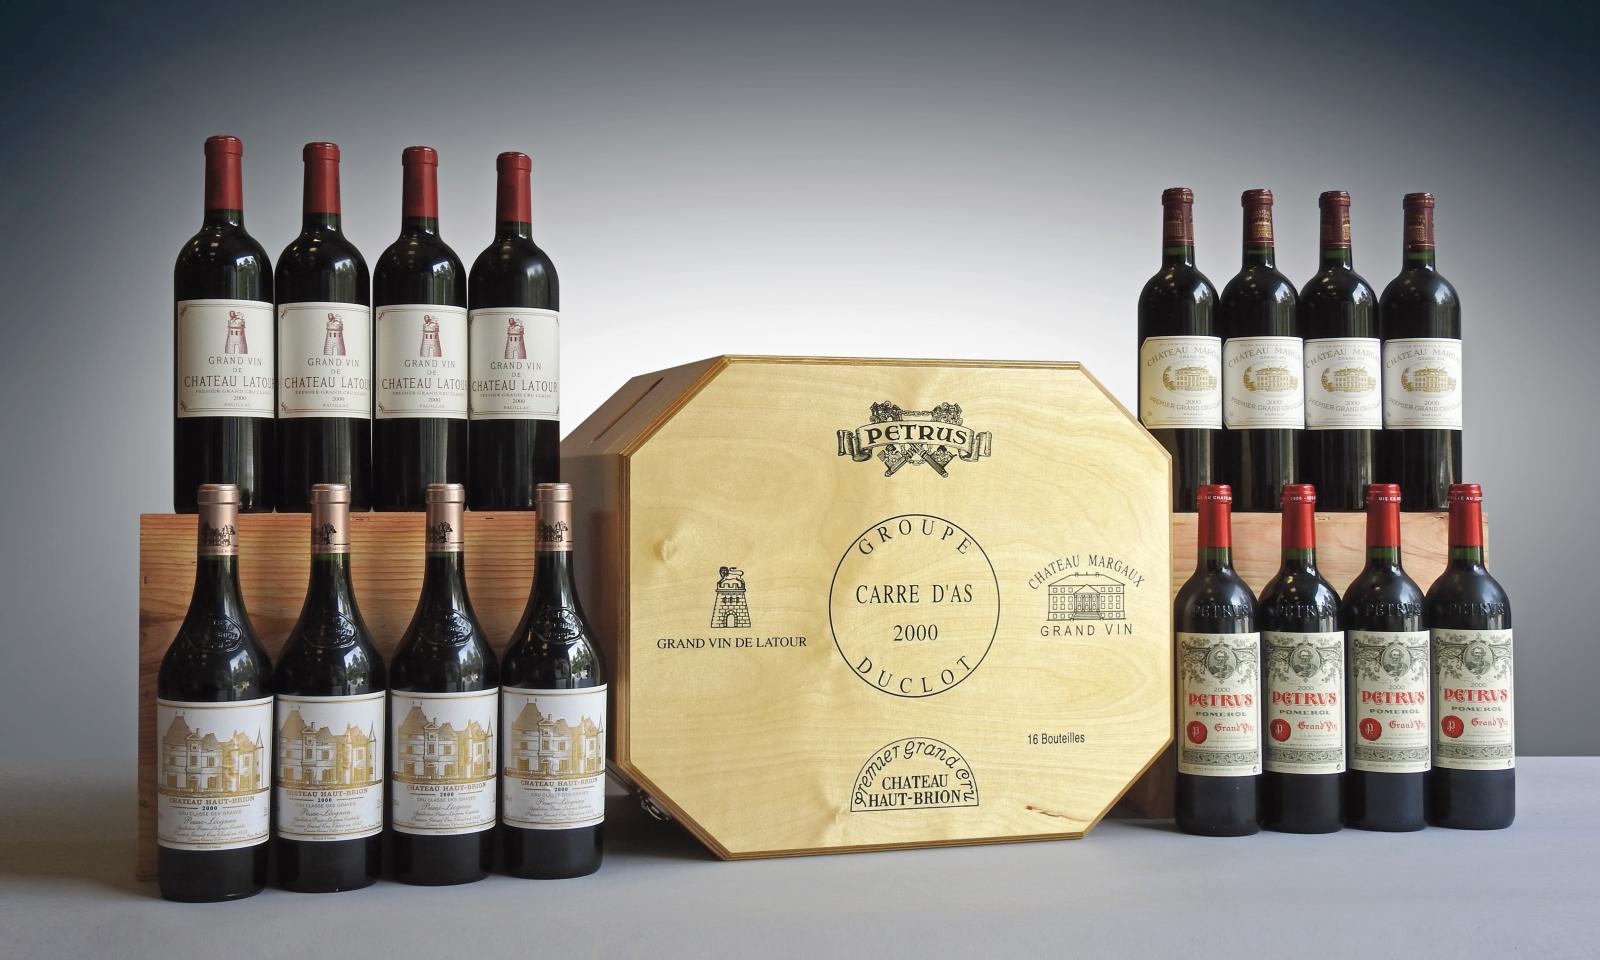 Initiées par le groupe Duclot, l’un des plus importants négociants de grands vins de Bordeaux, les caisses Carré d’as comportent quatre bouteilles de 